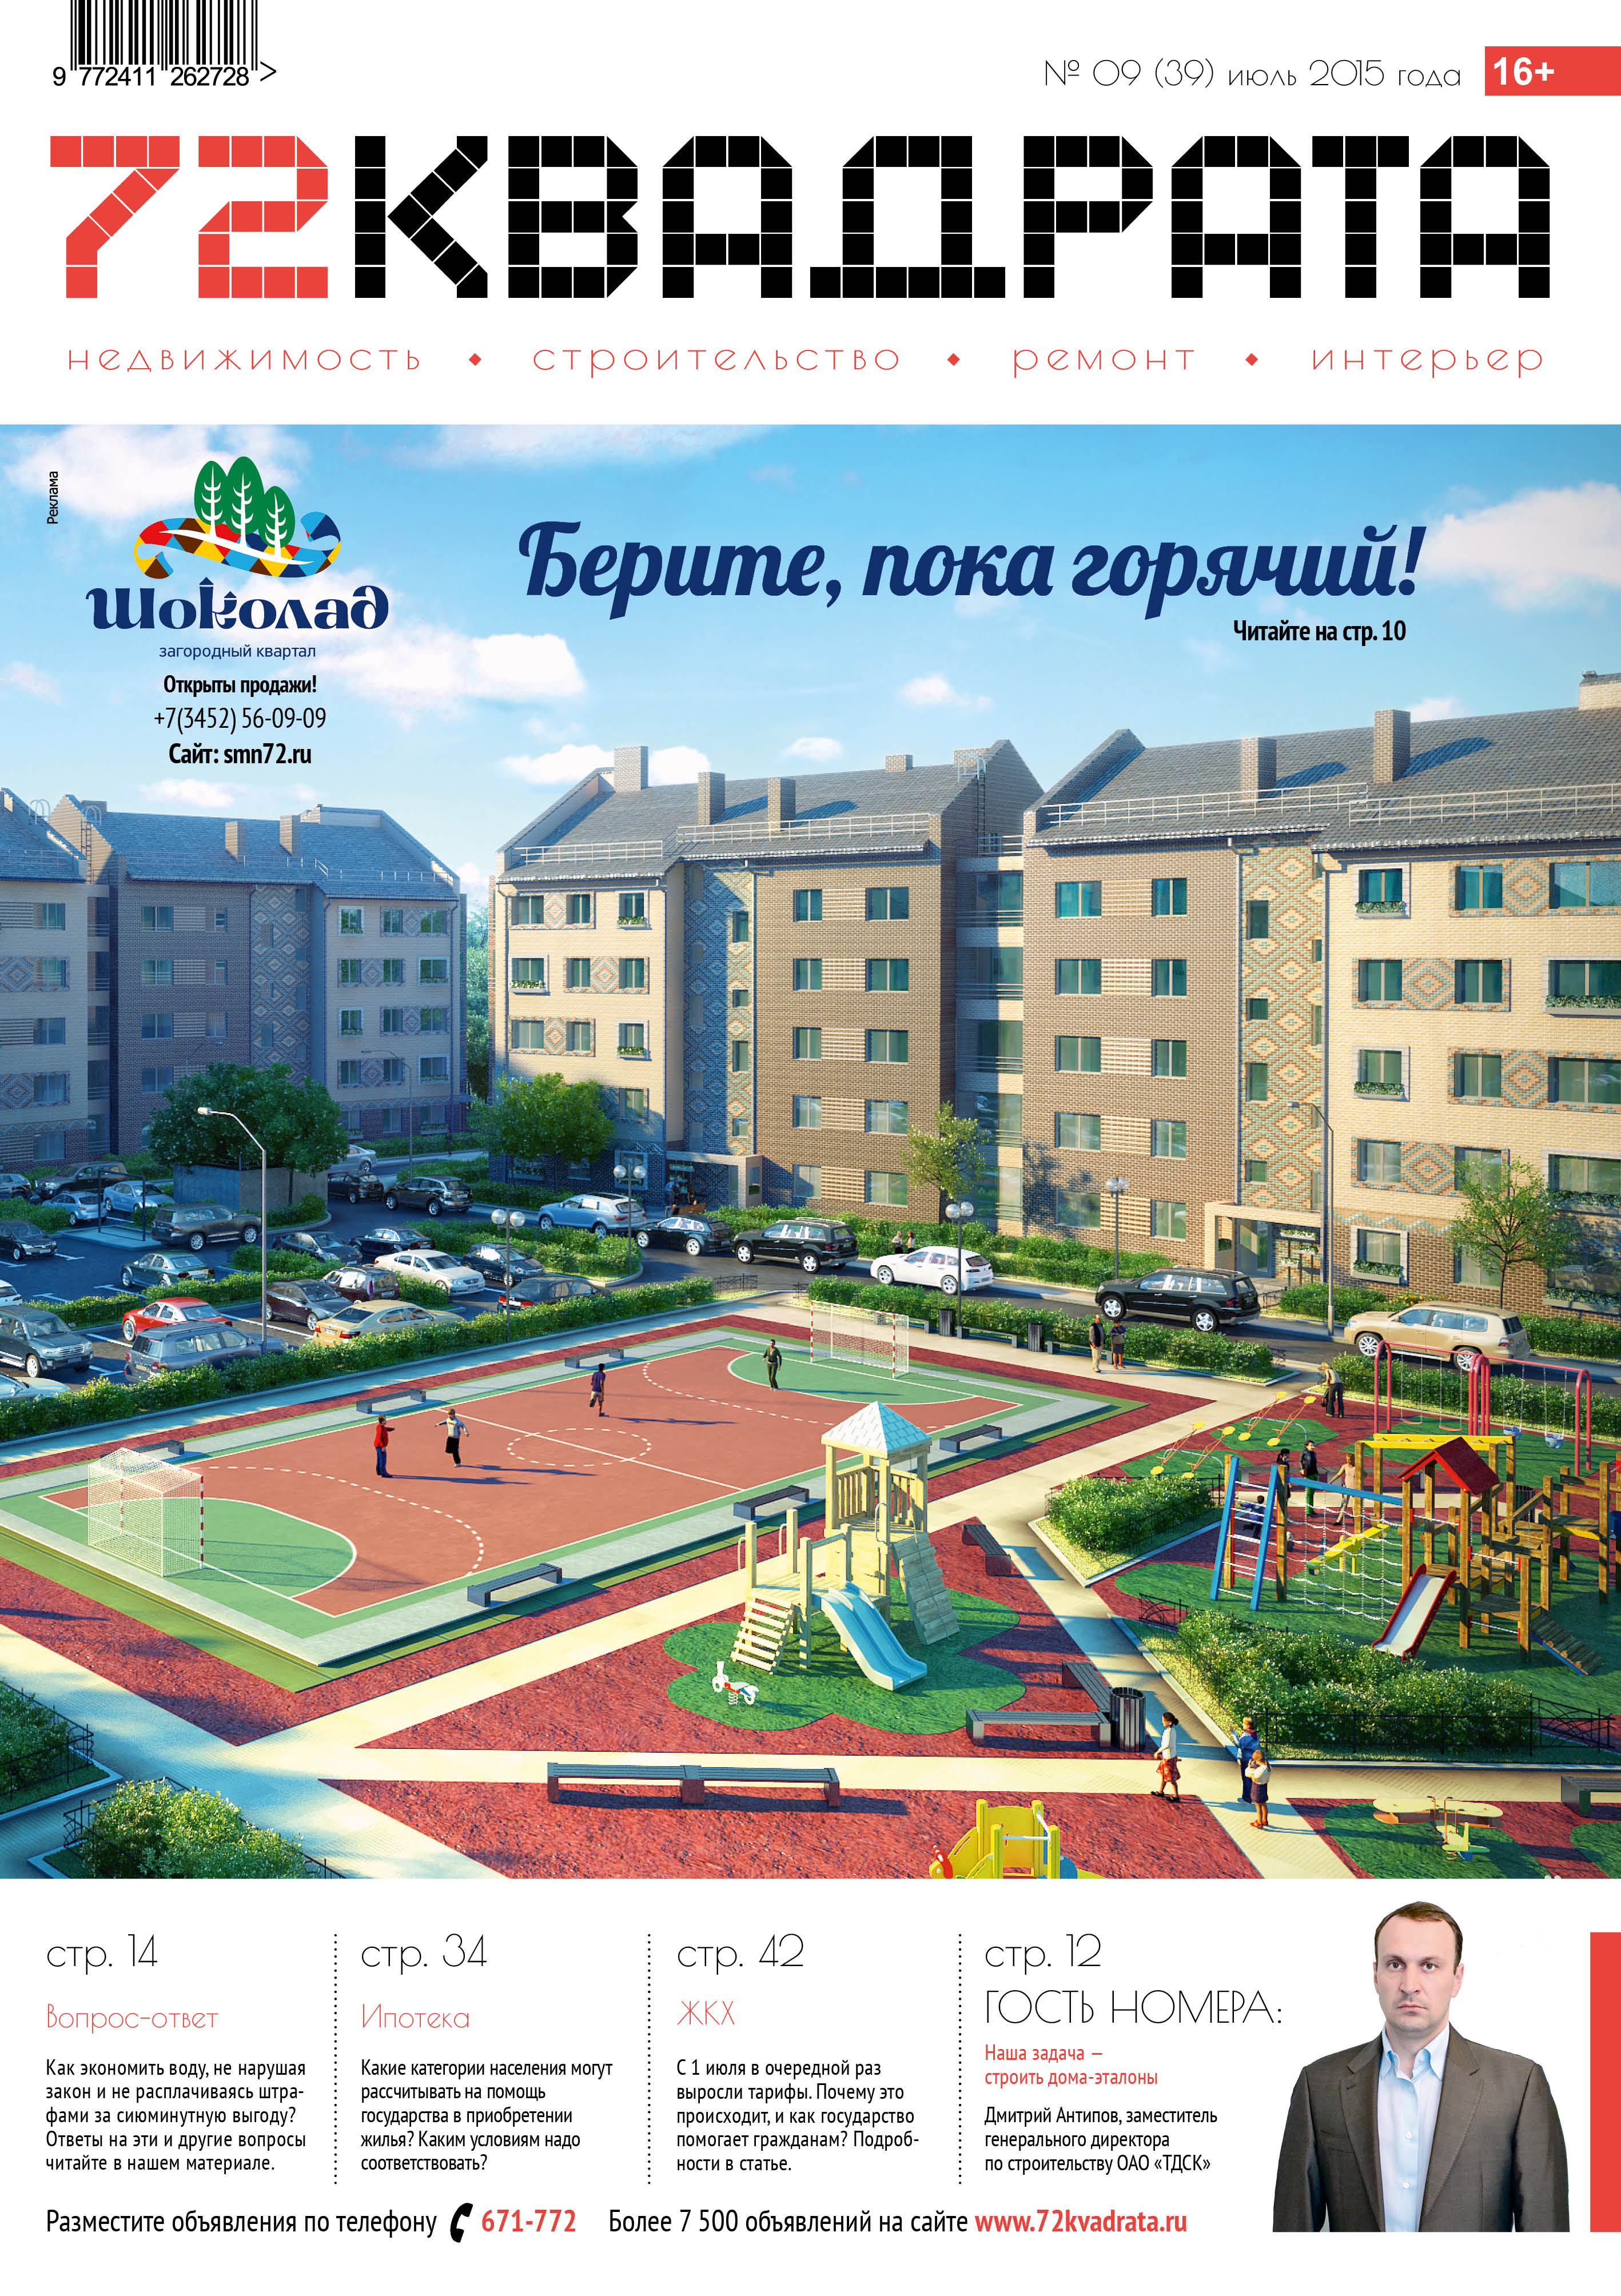 Сэкономь 3 000 рублей на услугах риелтора при аренде квартиры!